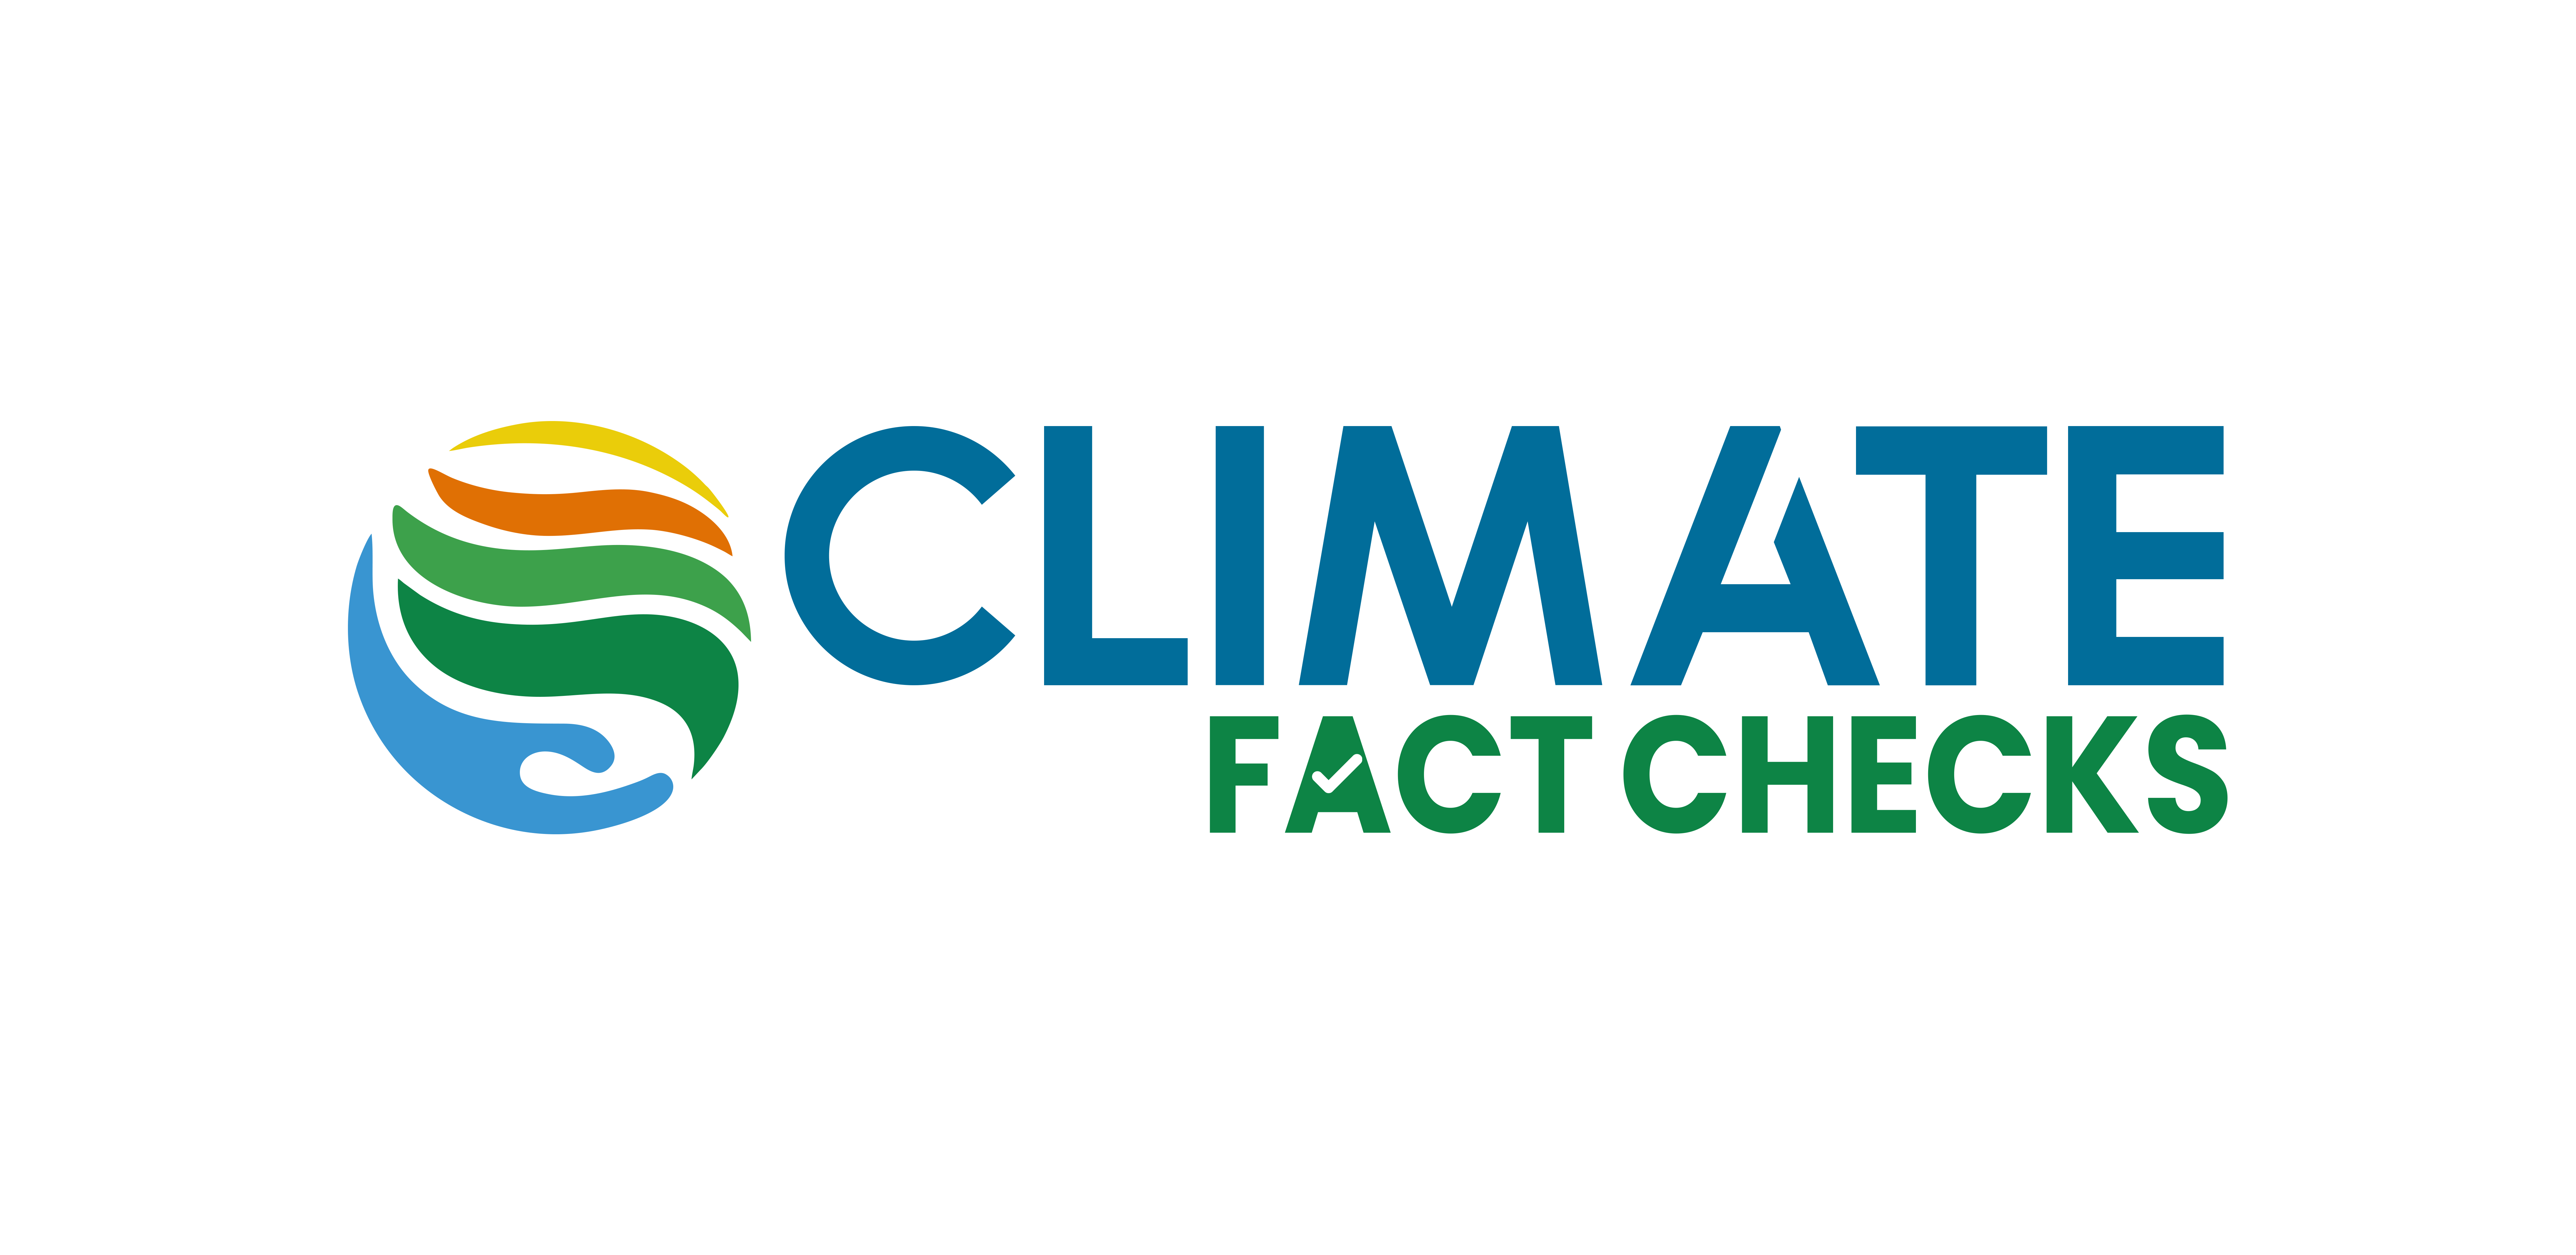 Gujarati | Climate Fact Checks